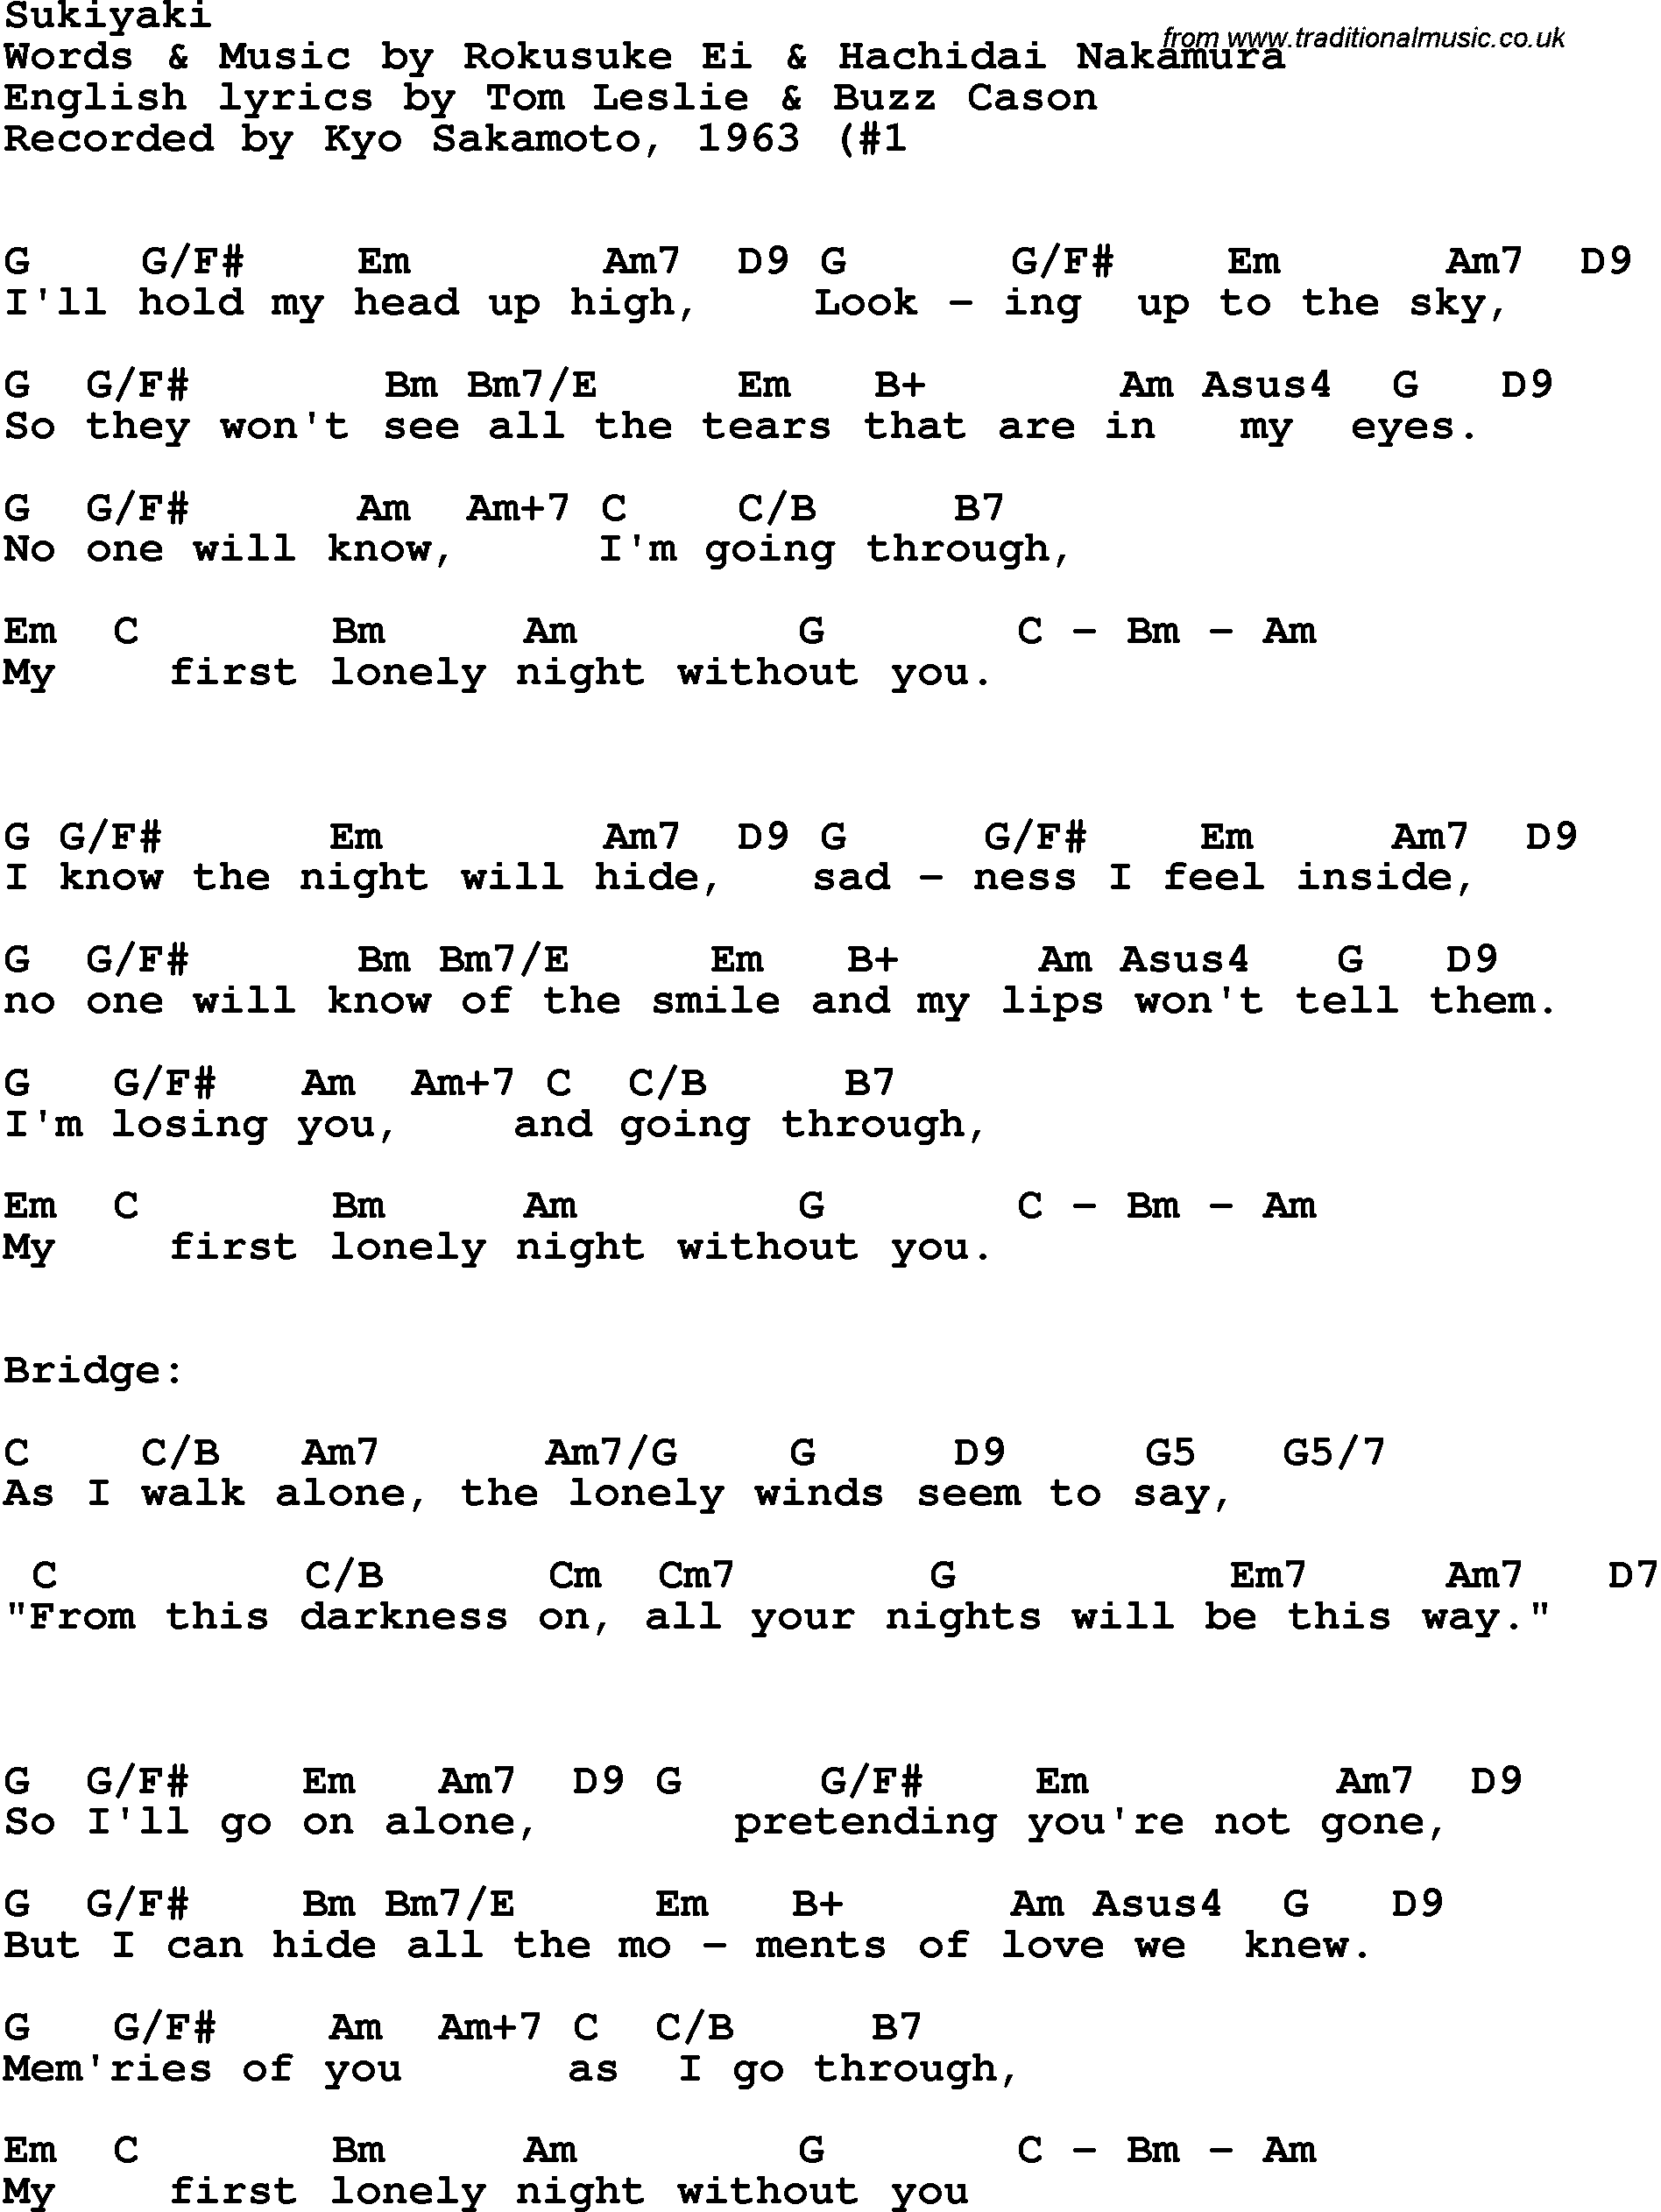 Song Lyrics with guitar chords for Sukiyaki - Kyo Sakamoto, 1964